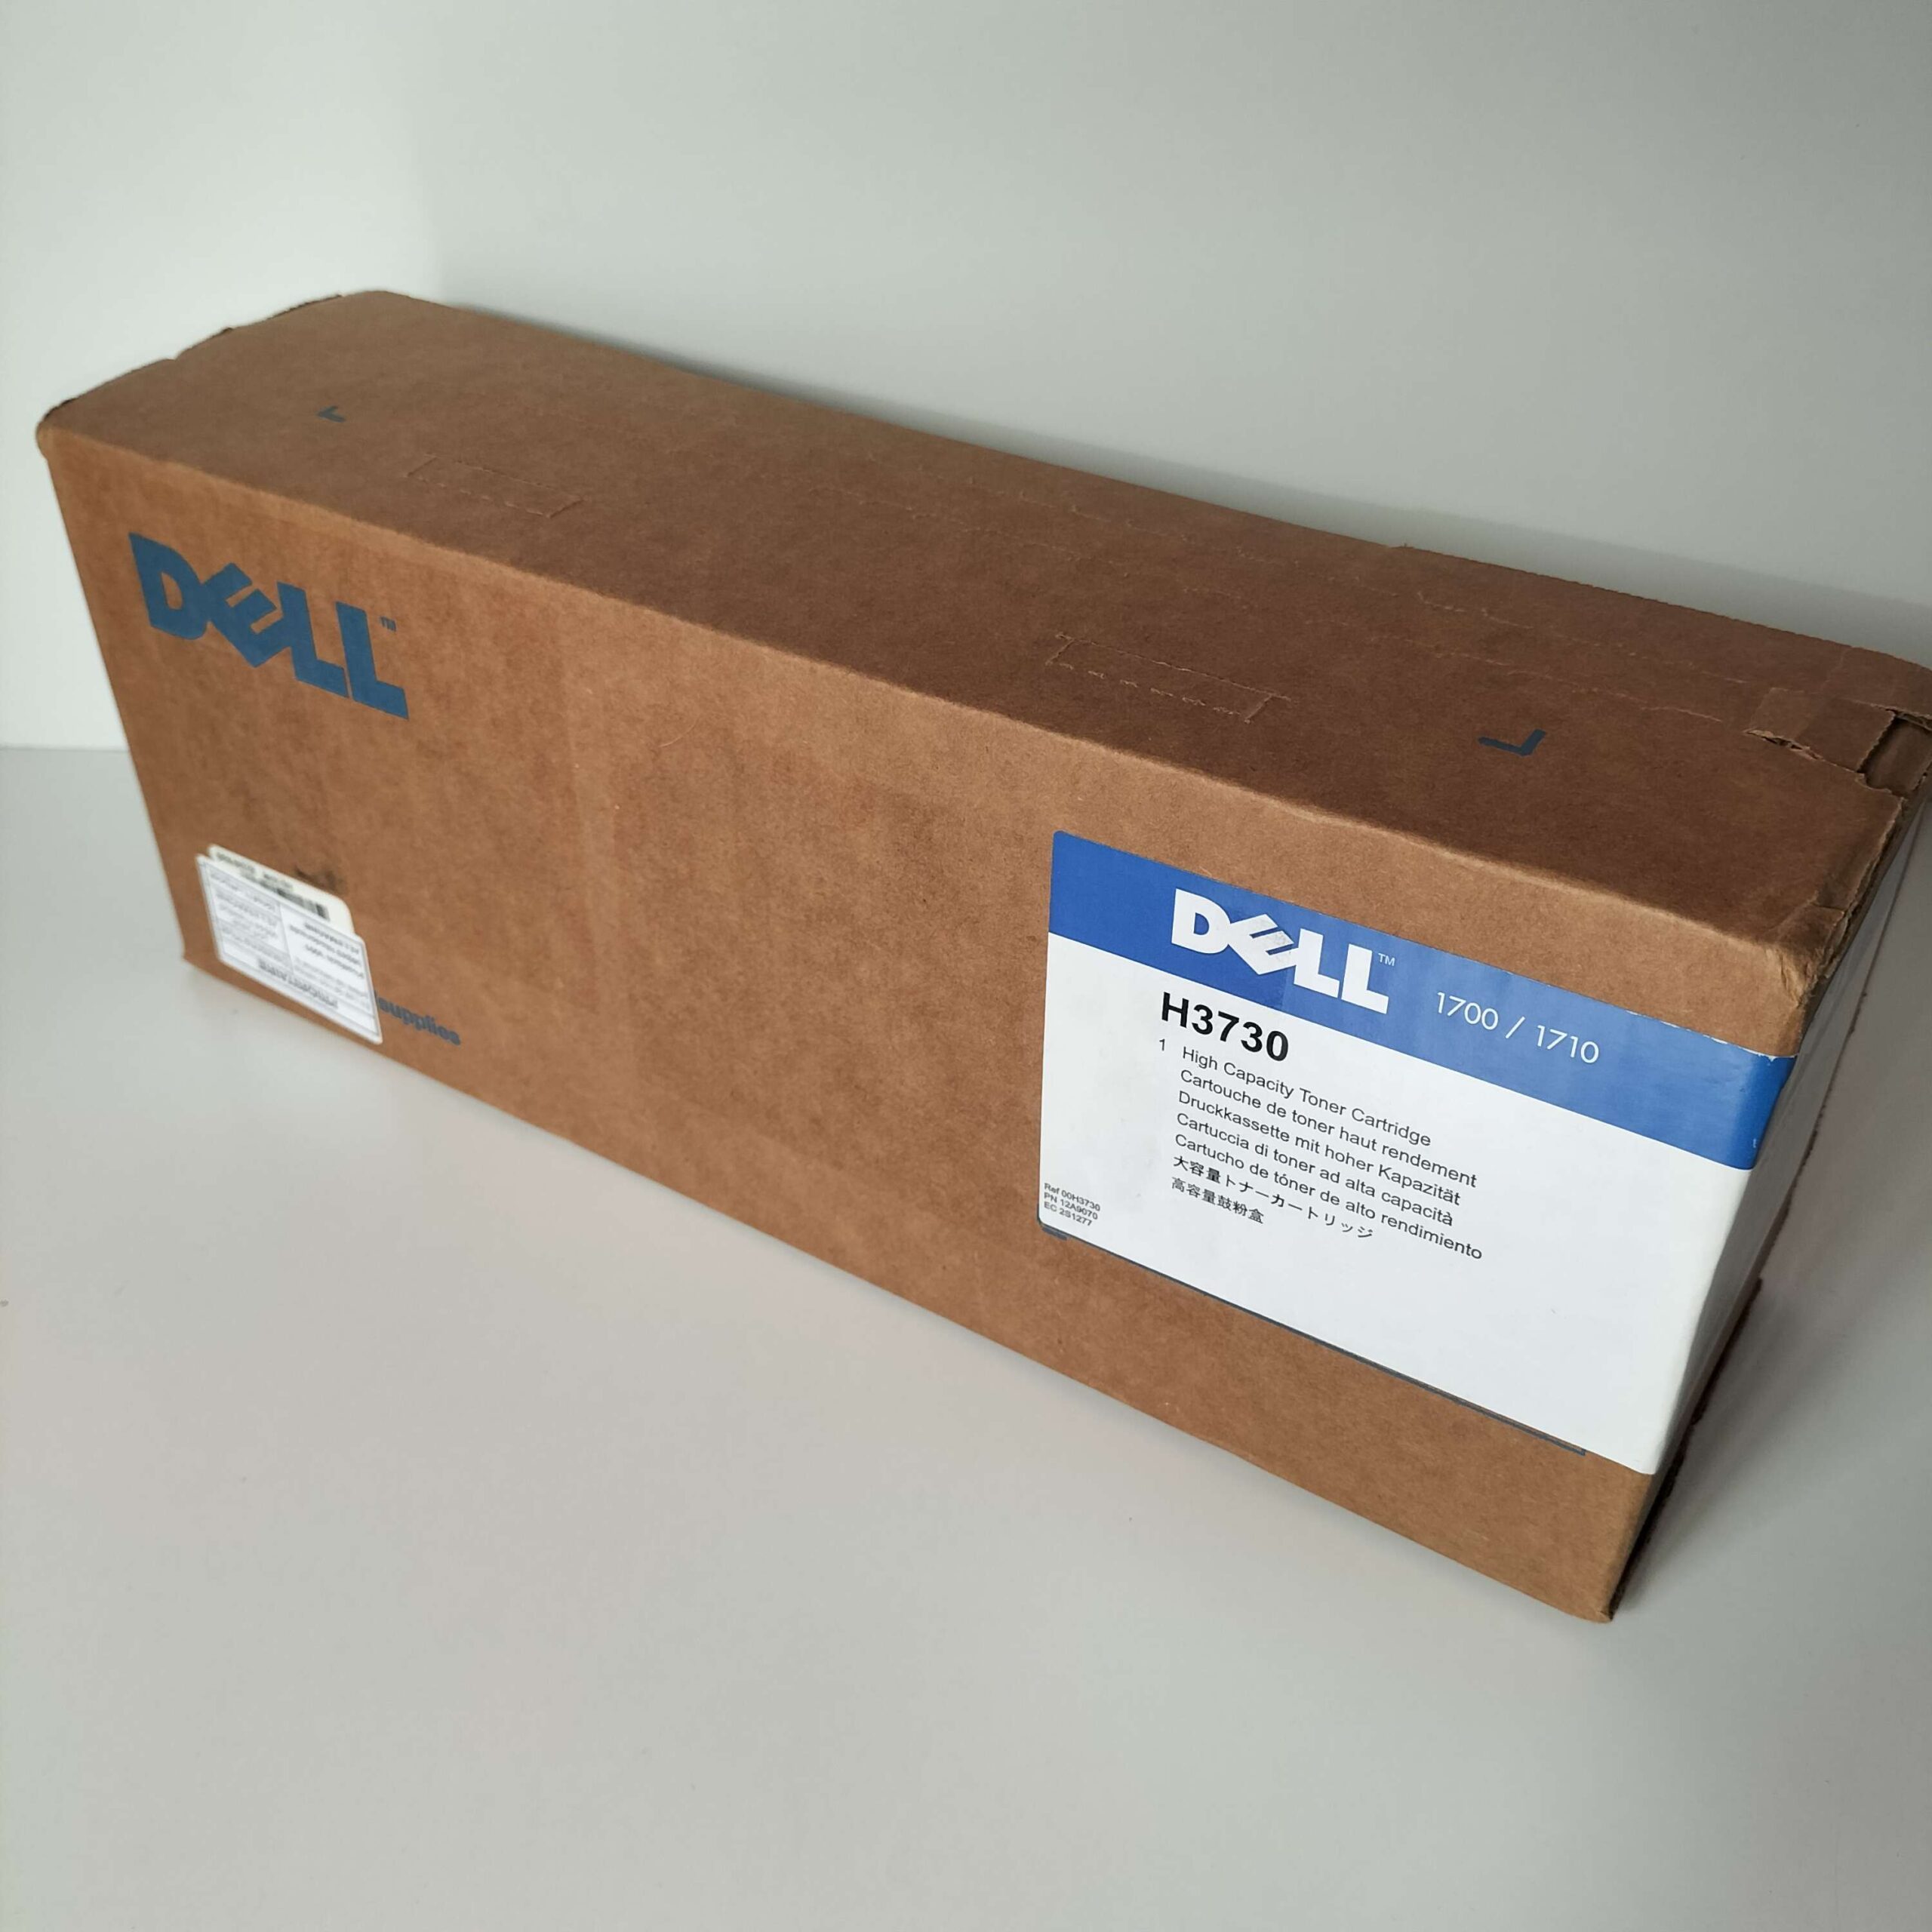 DELL H3730 Tóner original Dell para 1700 / 1710 series.